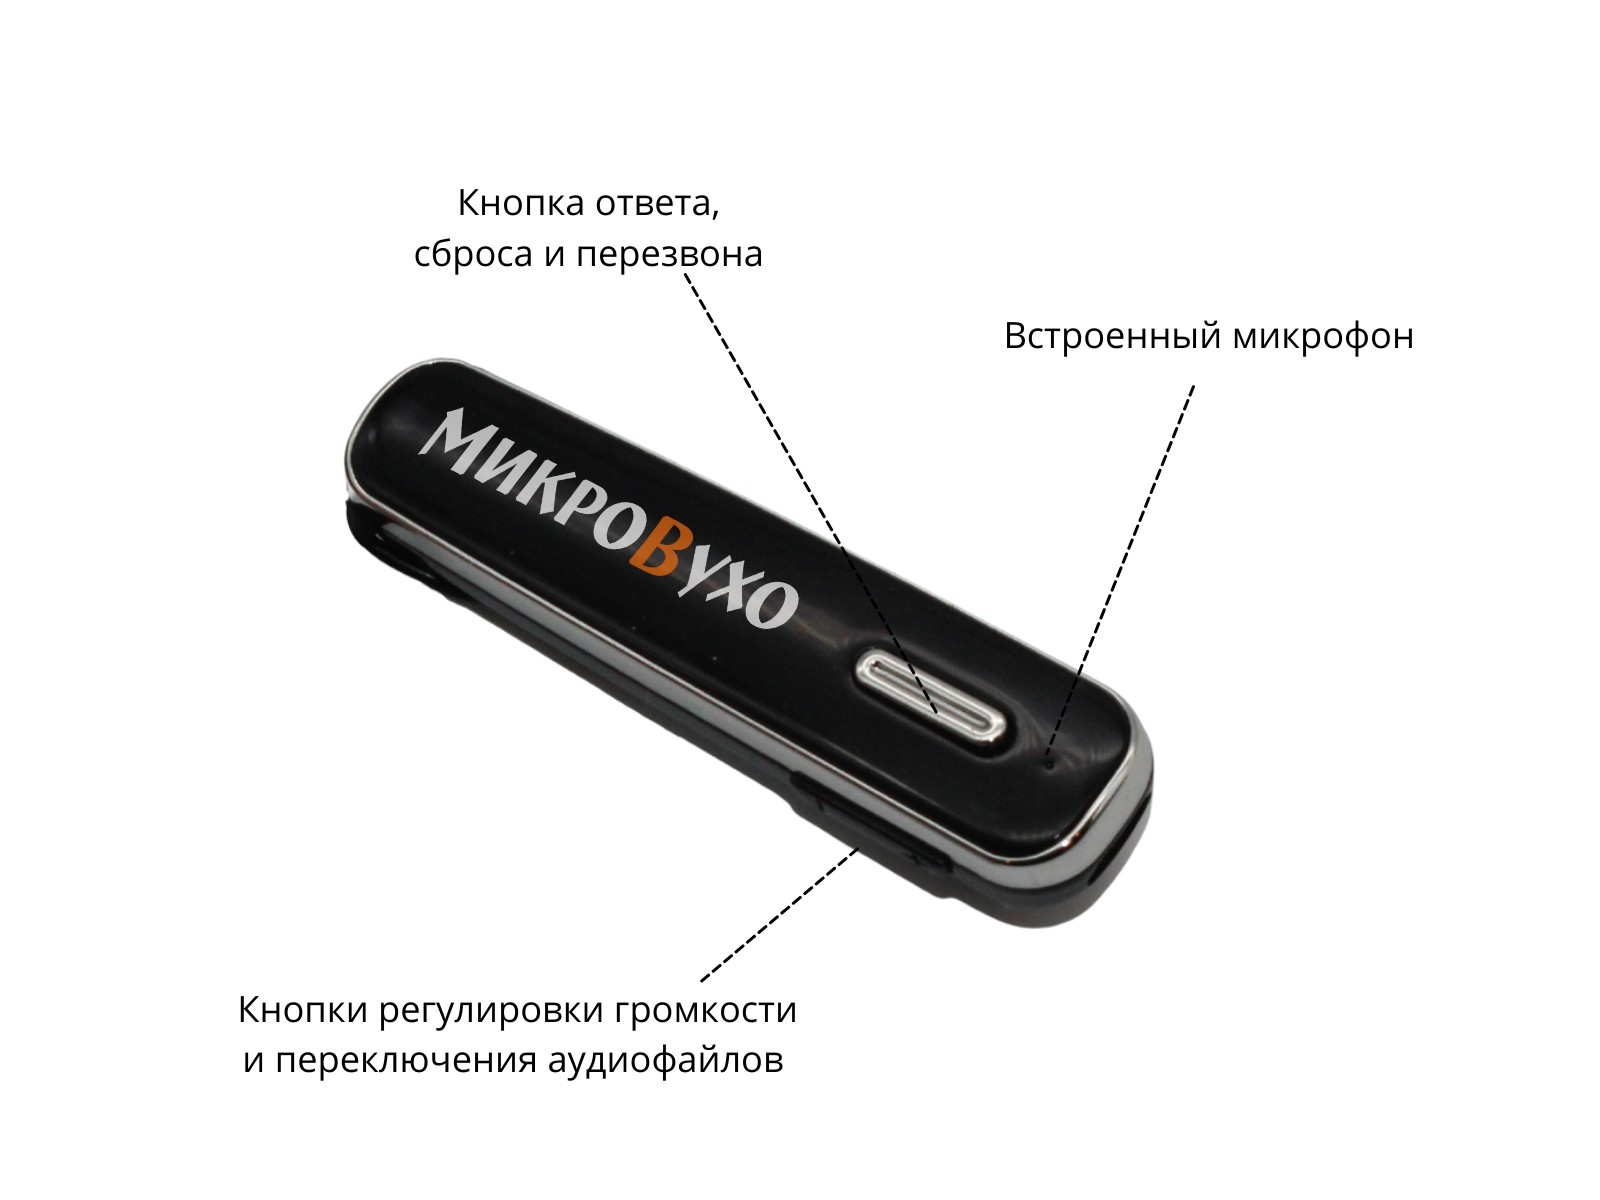 Гарнитура Bluetooth Box Premier Lite с капсульным микронаушником K5 4 мм